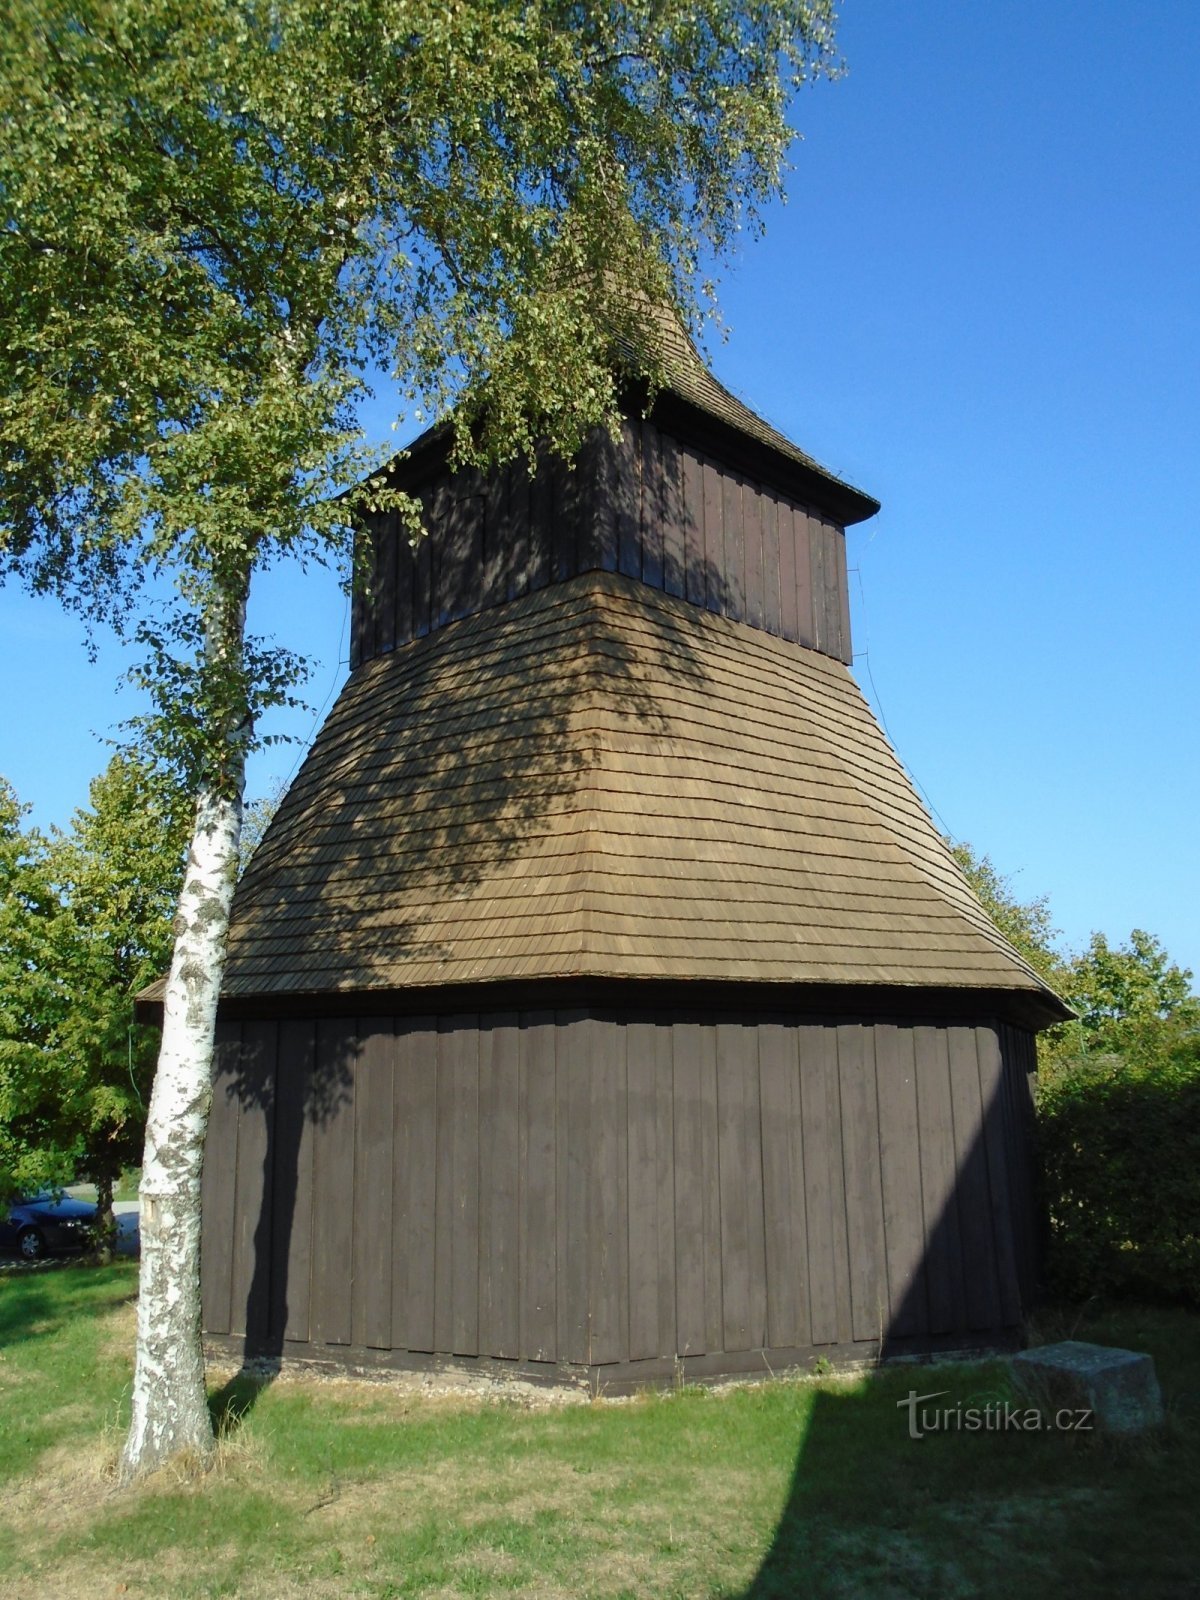 Tháp chuông ở nhà thờ St. Wenceslas và St. Stanislava (Měník)